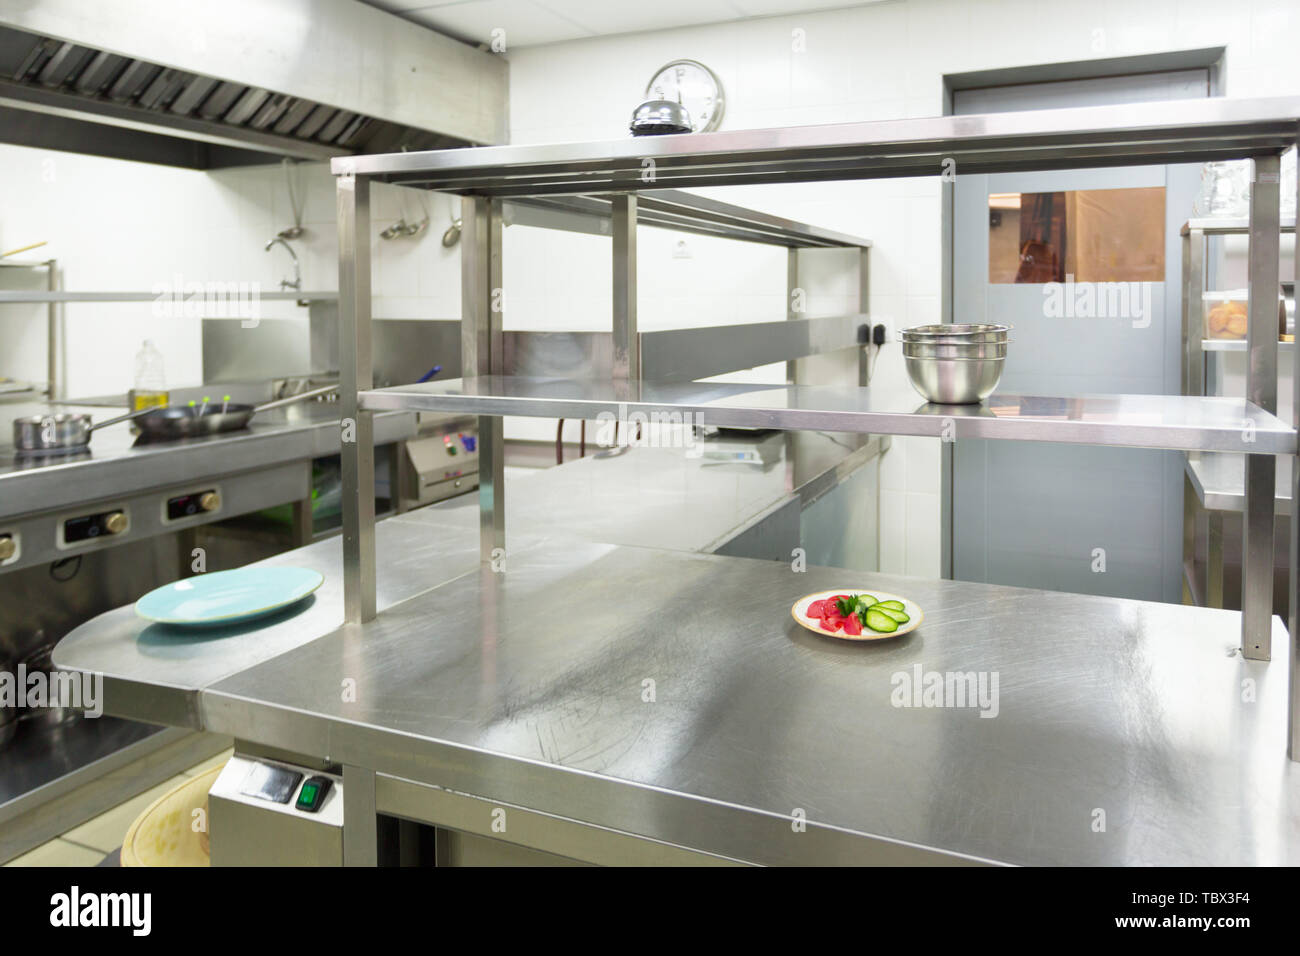 Modern kitchen equipment in a restaurant Stock Photo